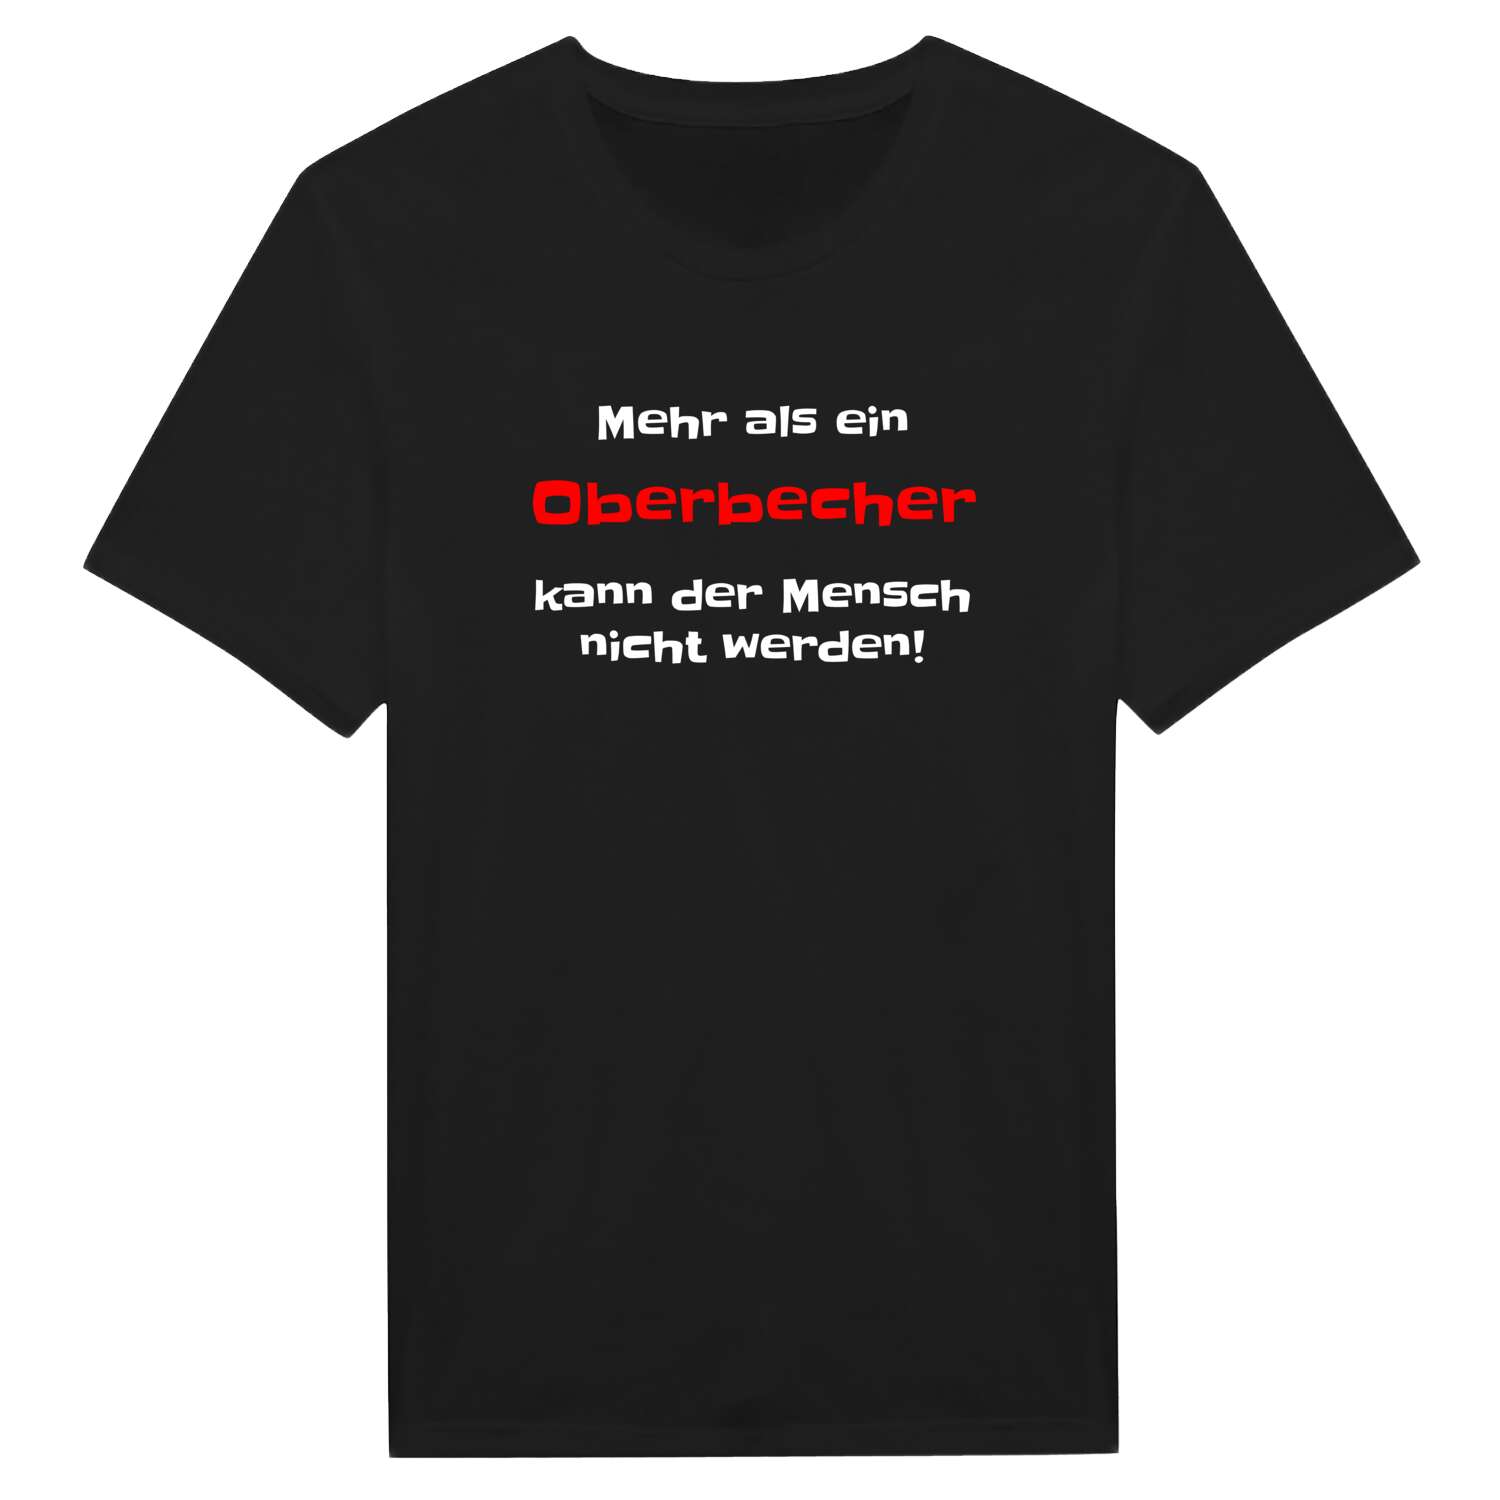 Oberbech T-Shirt »Mehr als ein«